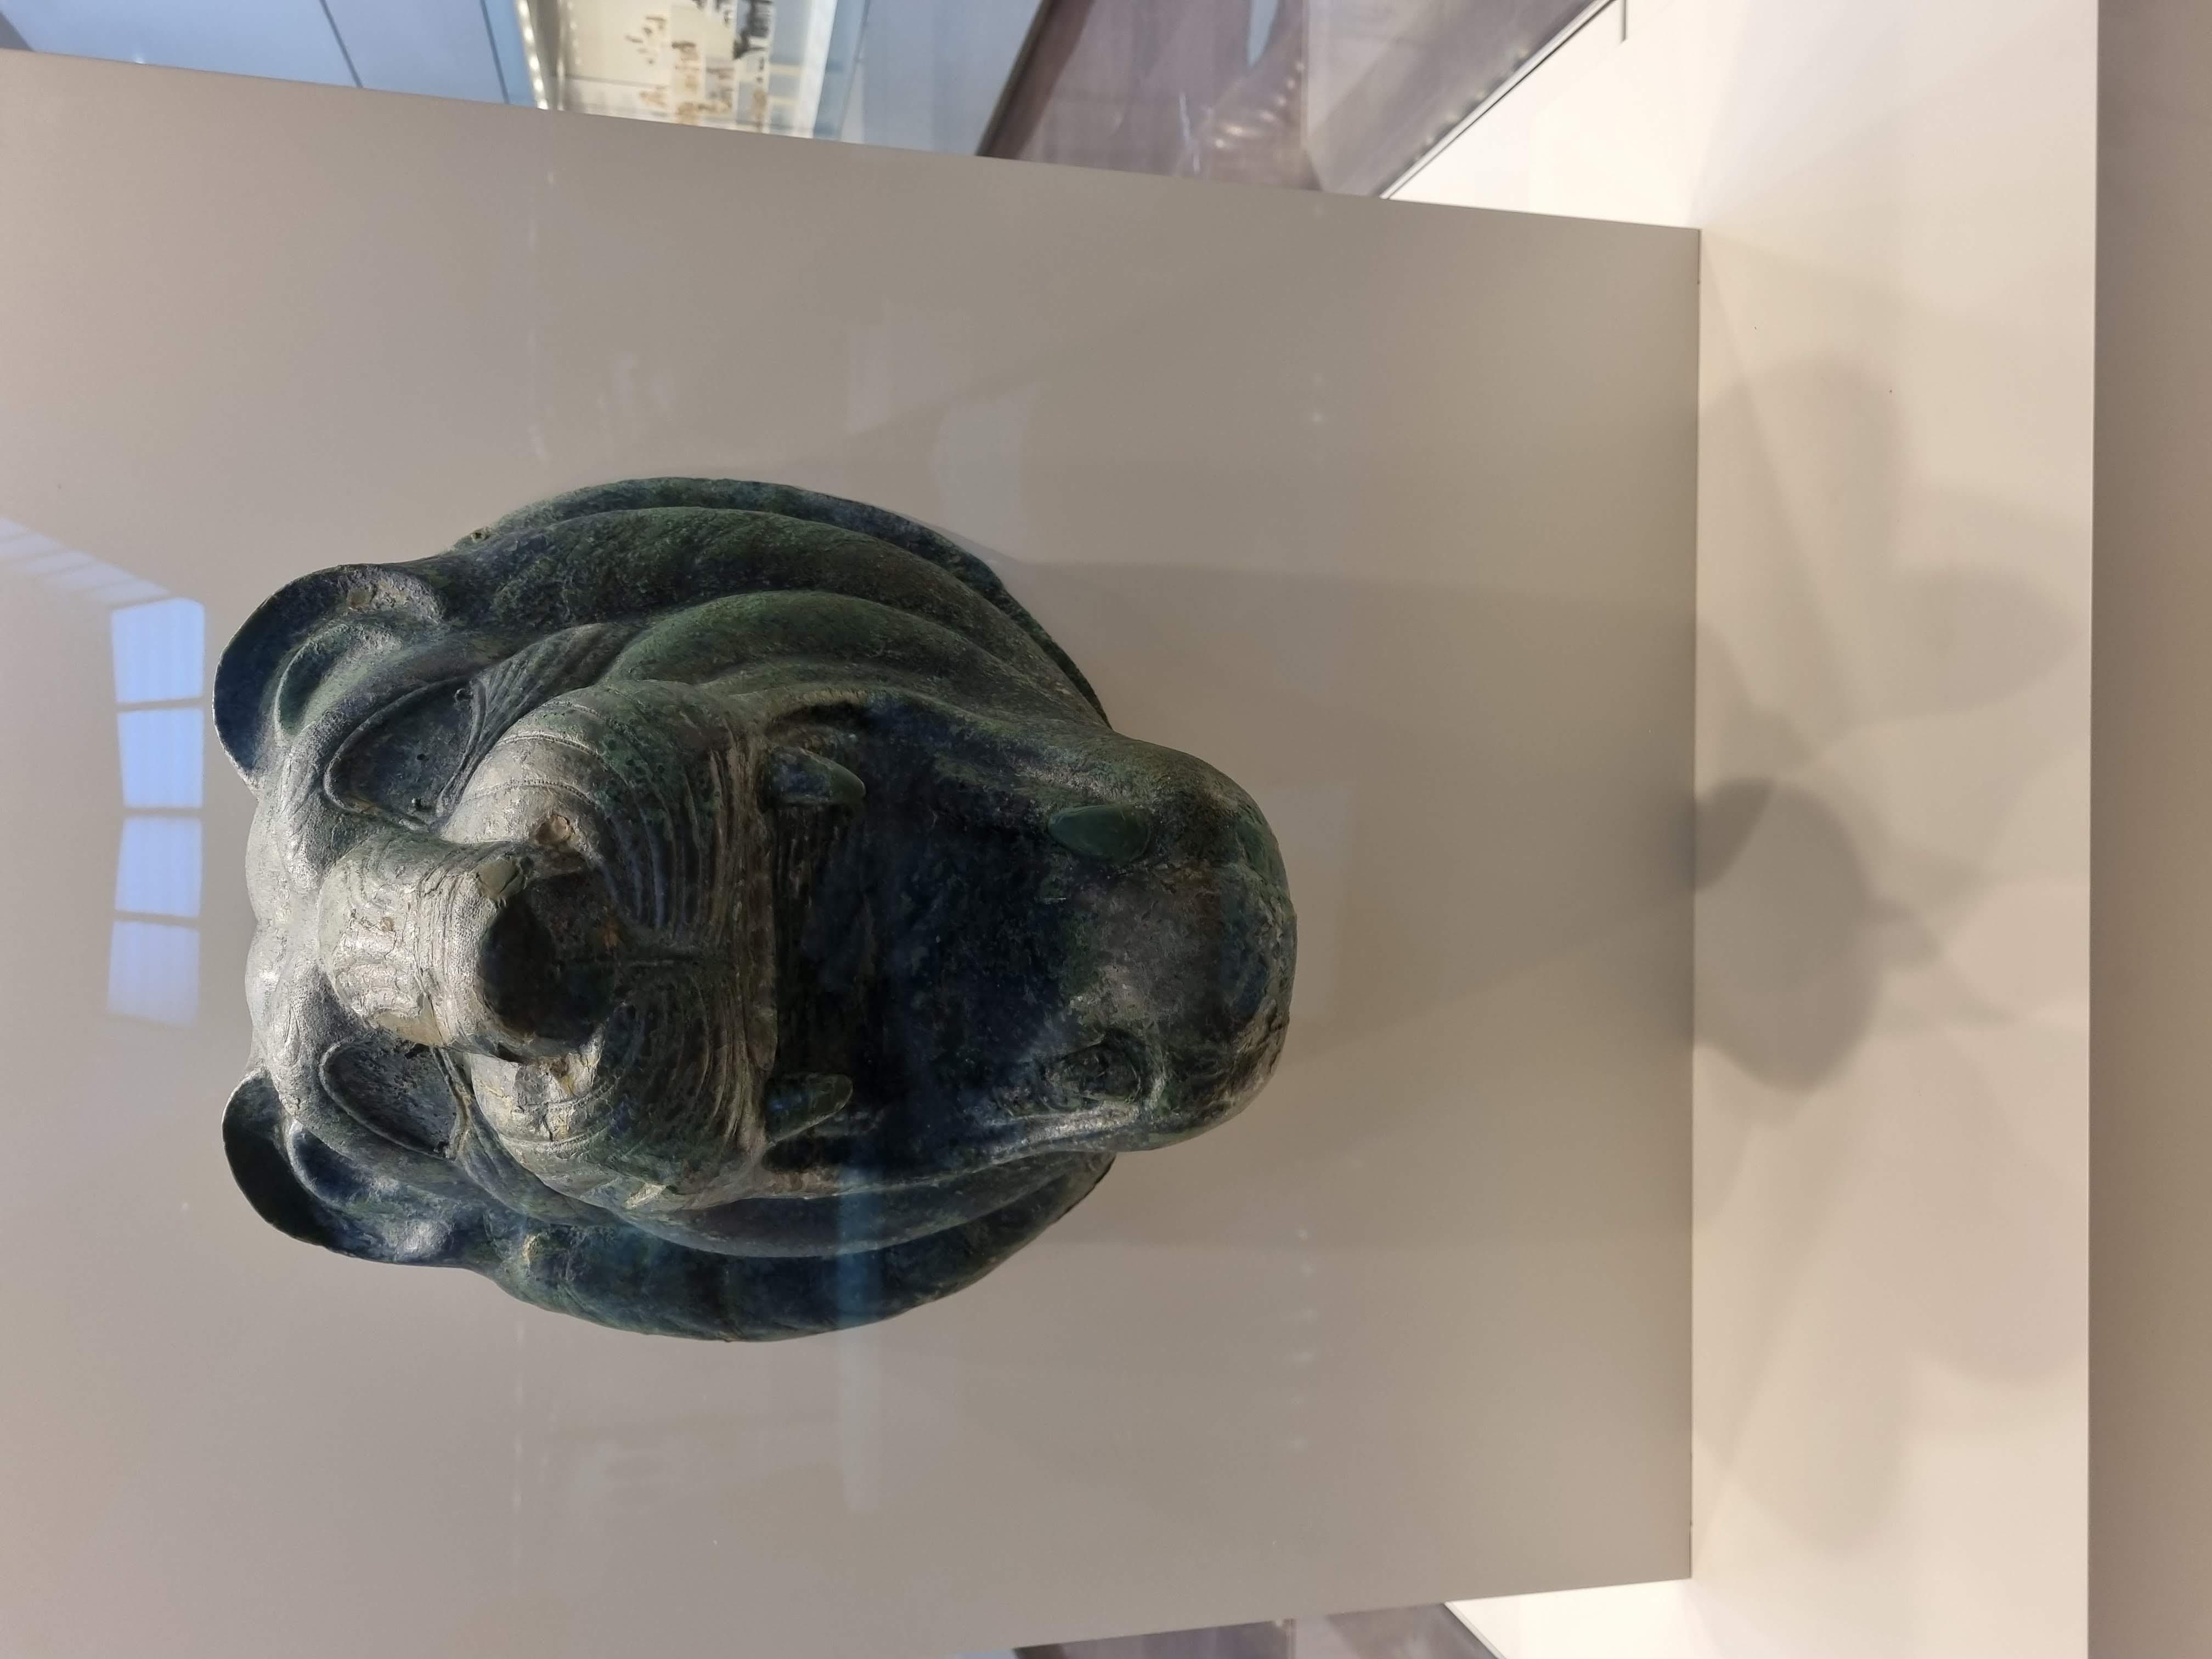 פסל האריה שנמצא בחפירות הארכיאולוגיות בהרקליון